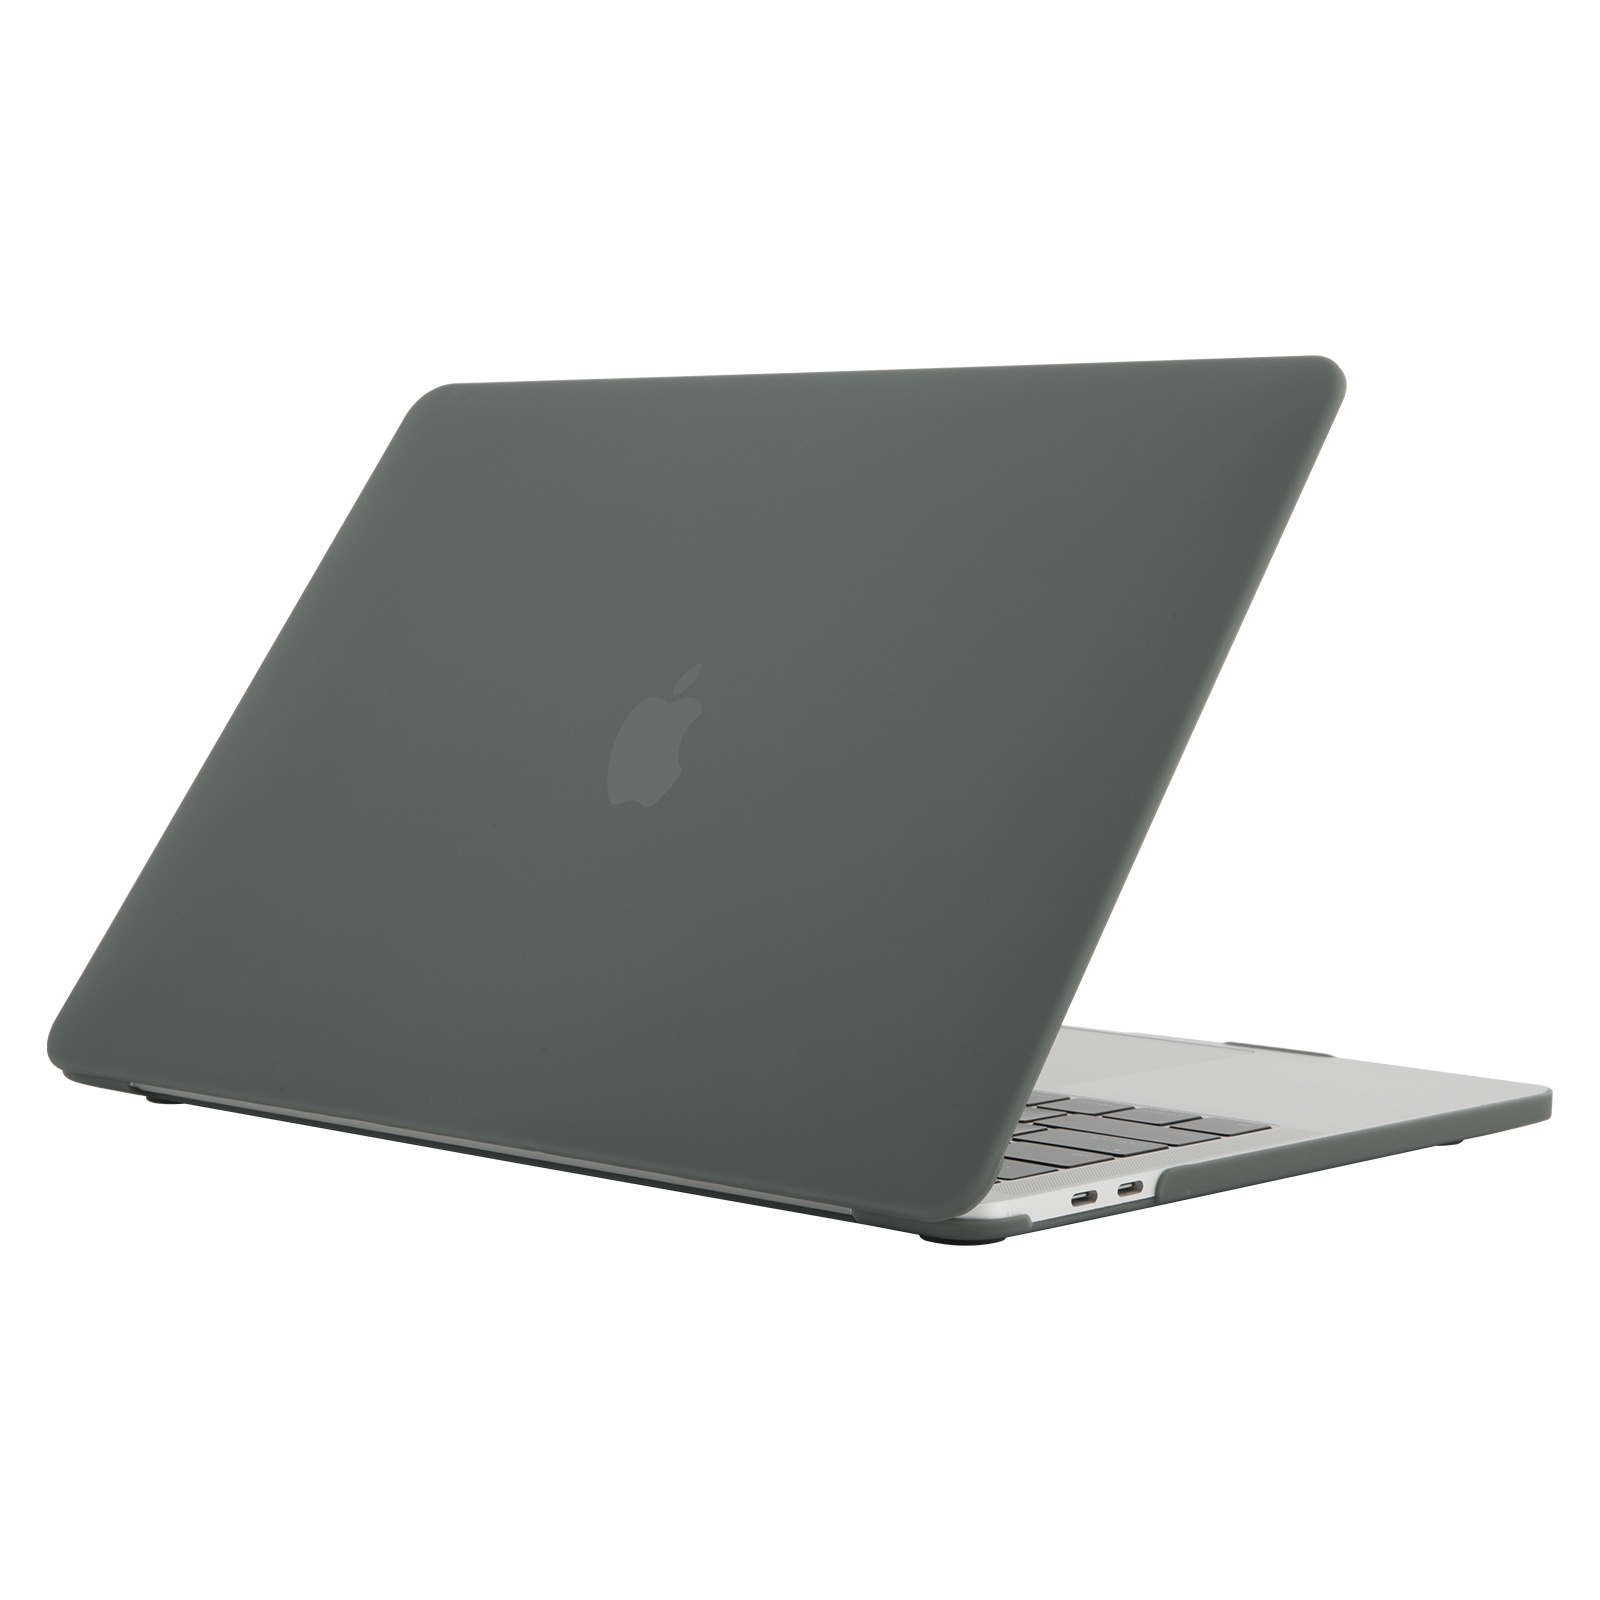 iPouzdro.cz pro MacBook Pro 12 2222221001330 černá